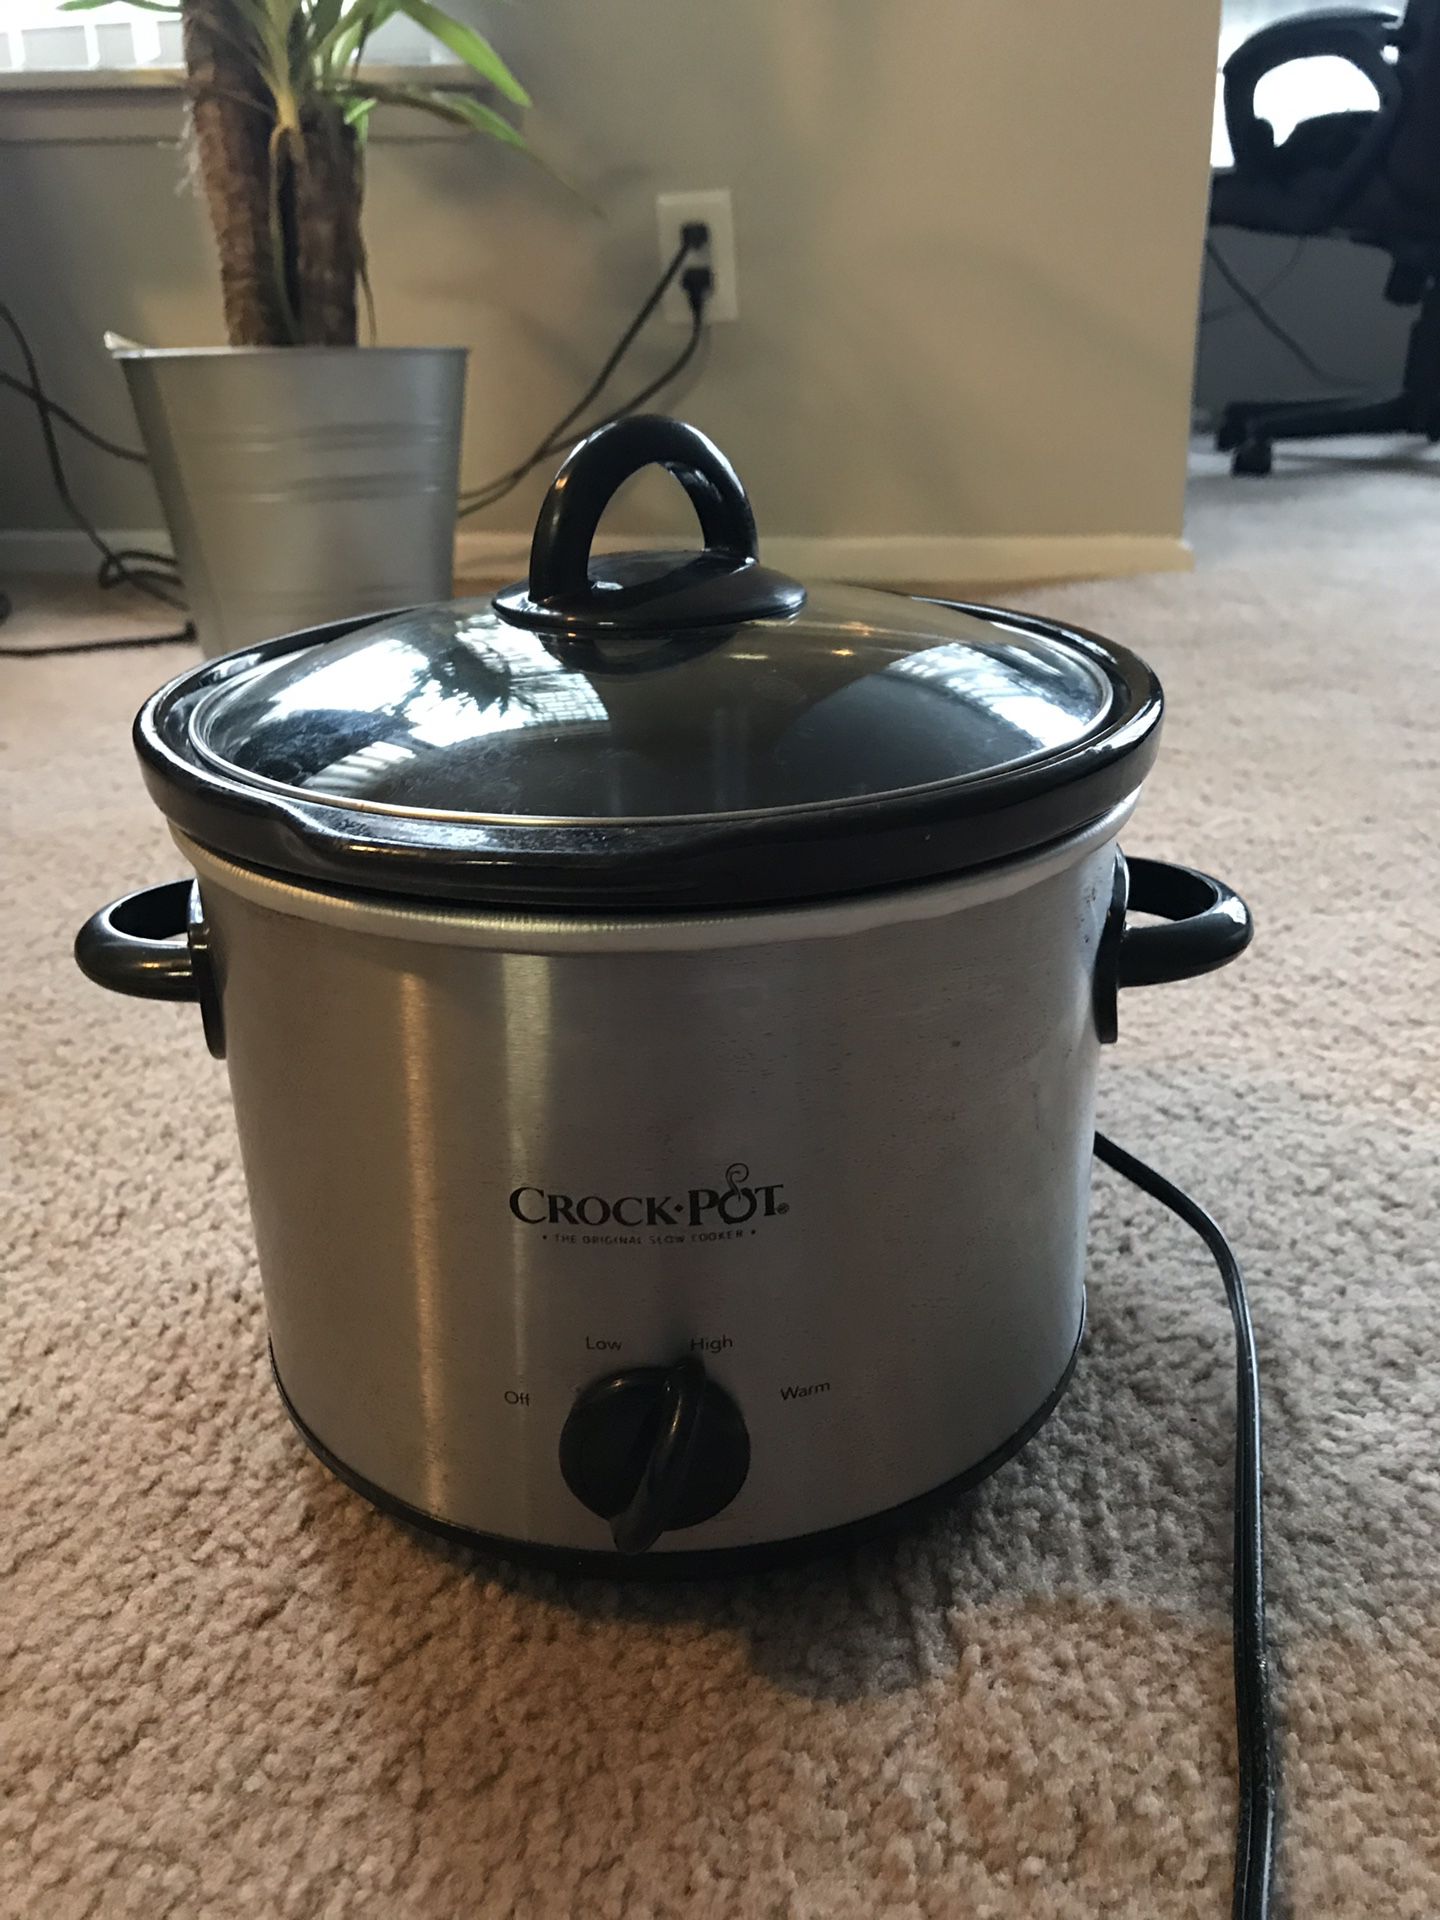 Crock pot SCR300-SS 3 quart manual slow cooker